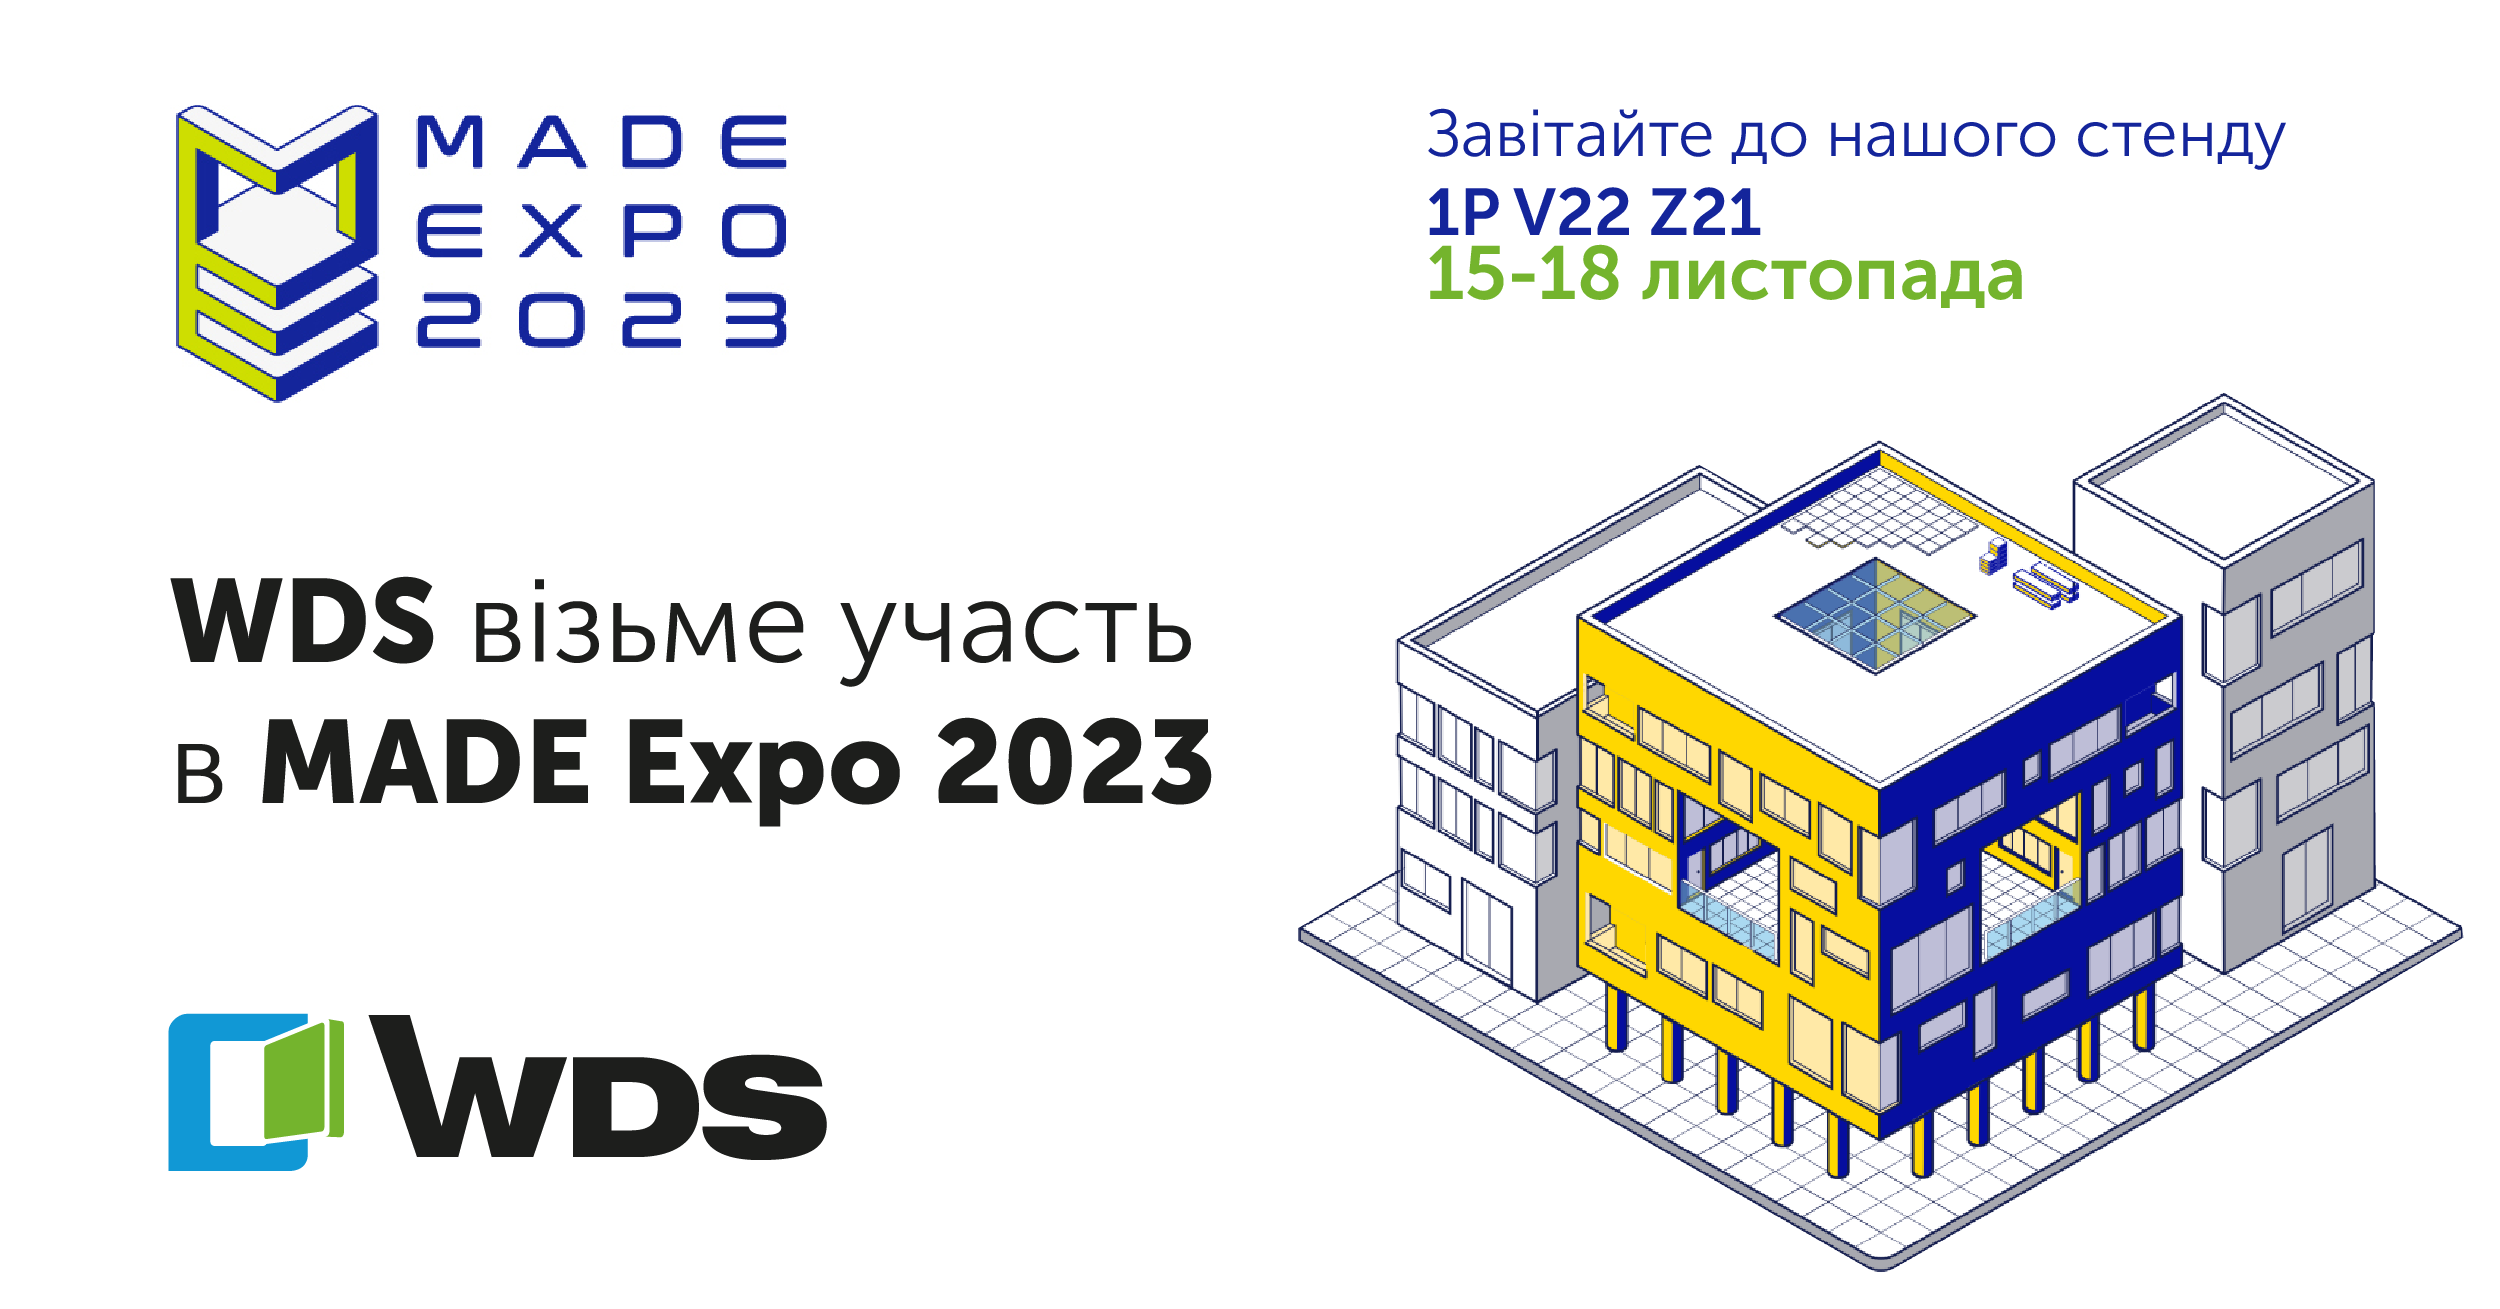 WDS parteciperà a MADE expo 2023